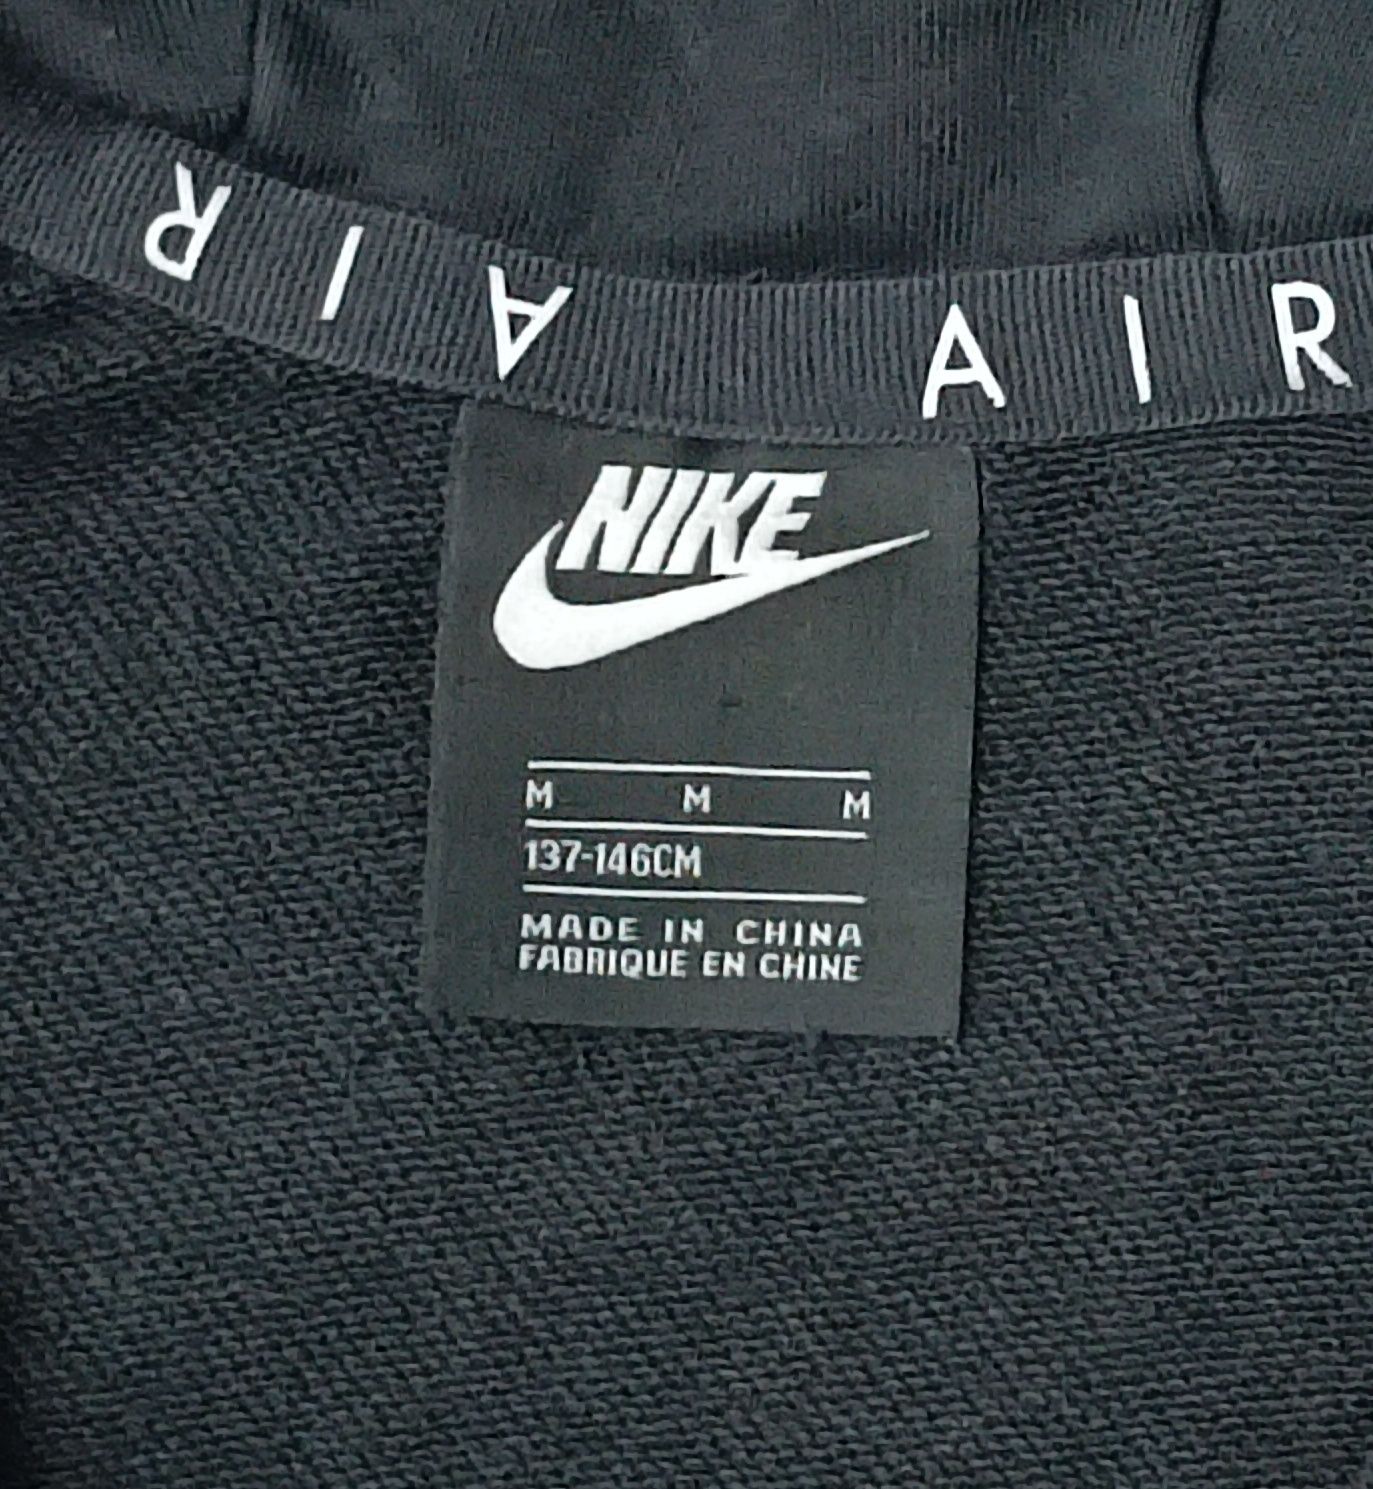 Nike AIR Hooded Sweatshirt оригинално горнище ръст 137-146см Найк